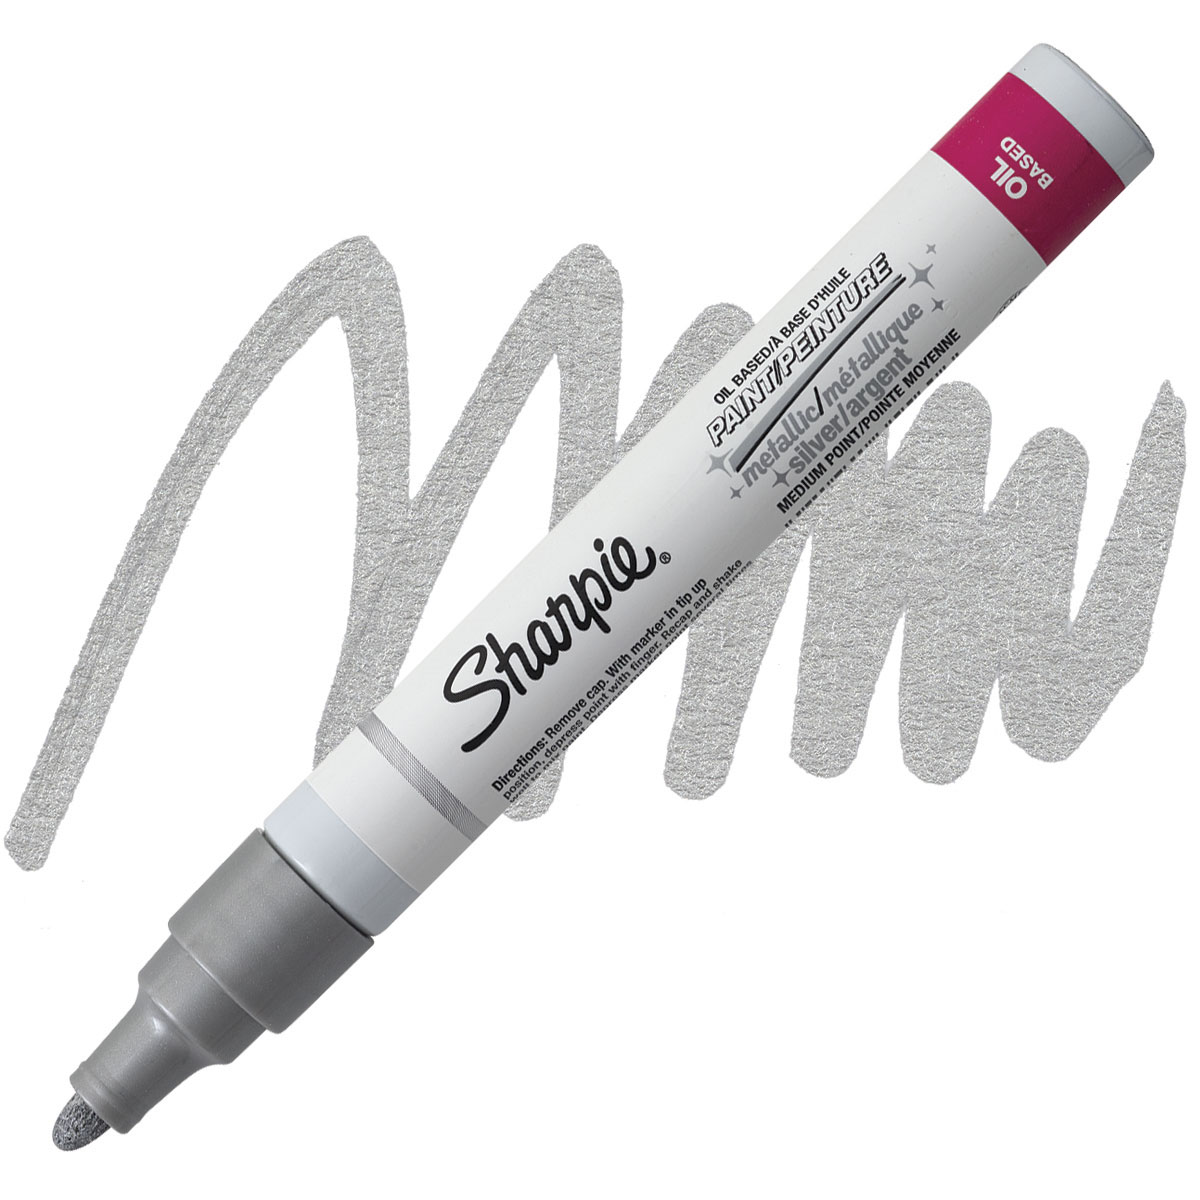 Sharpie Oil-Based Paint Marker - White, Medium Point, Pkg of 2